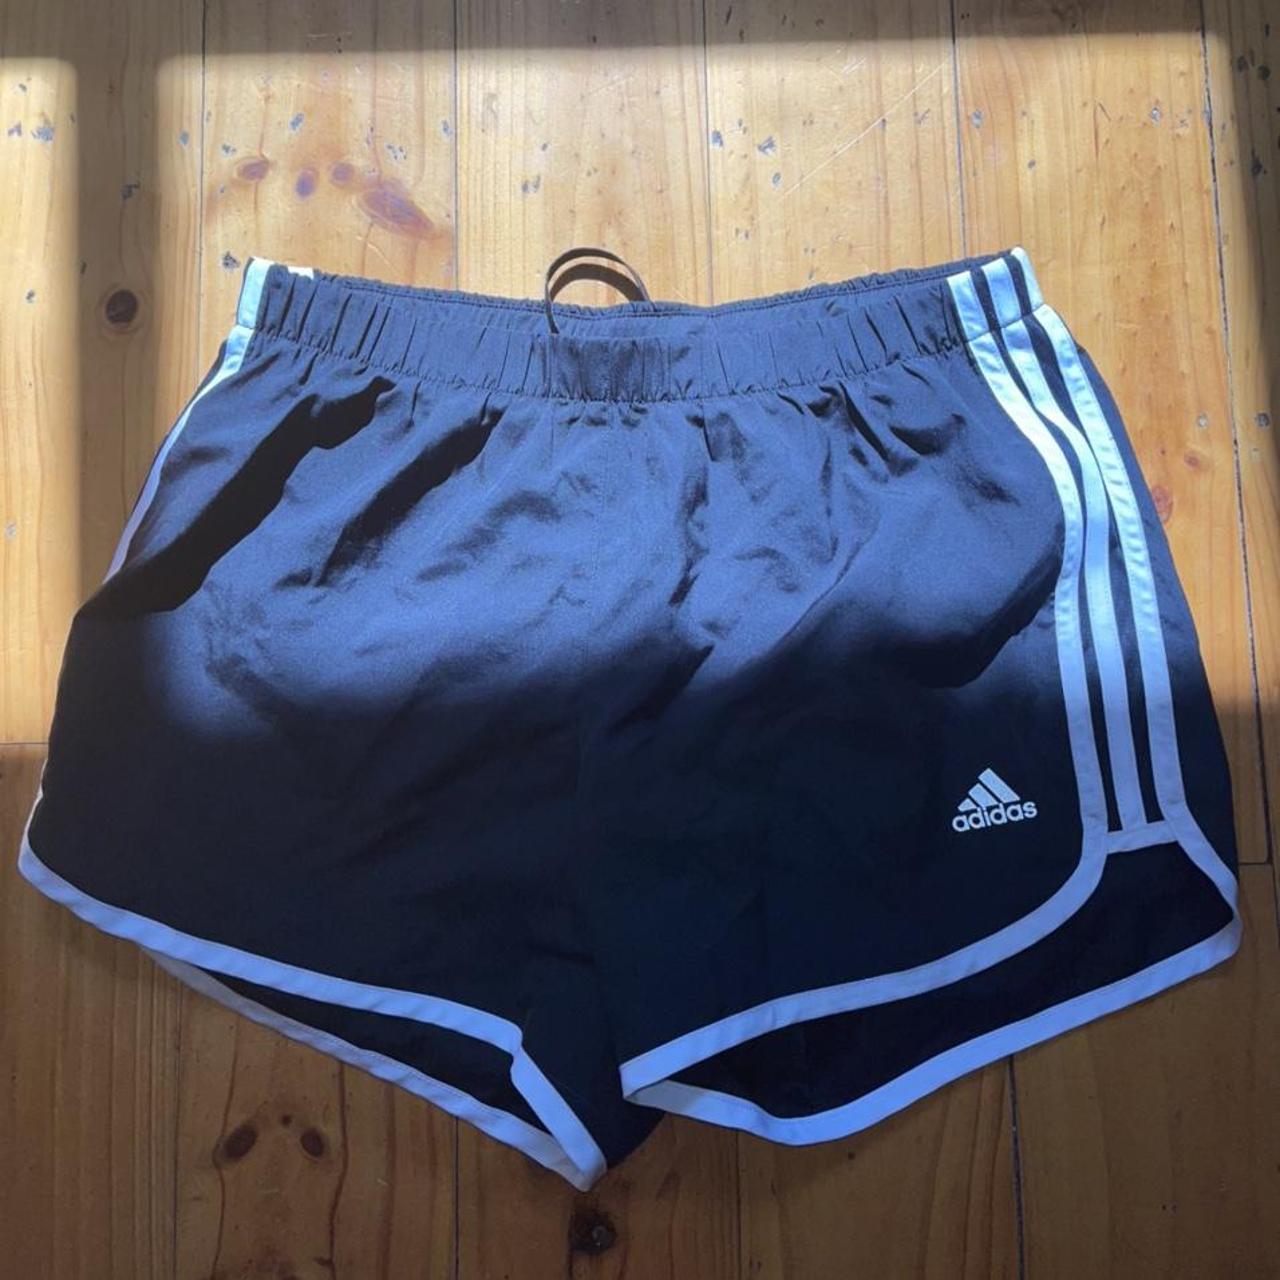 Adidas running shorts - Depop